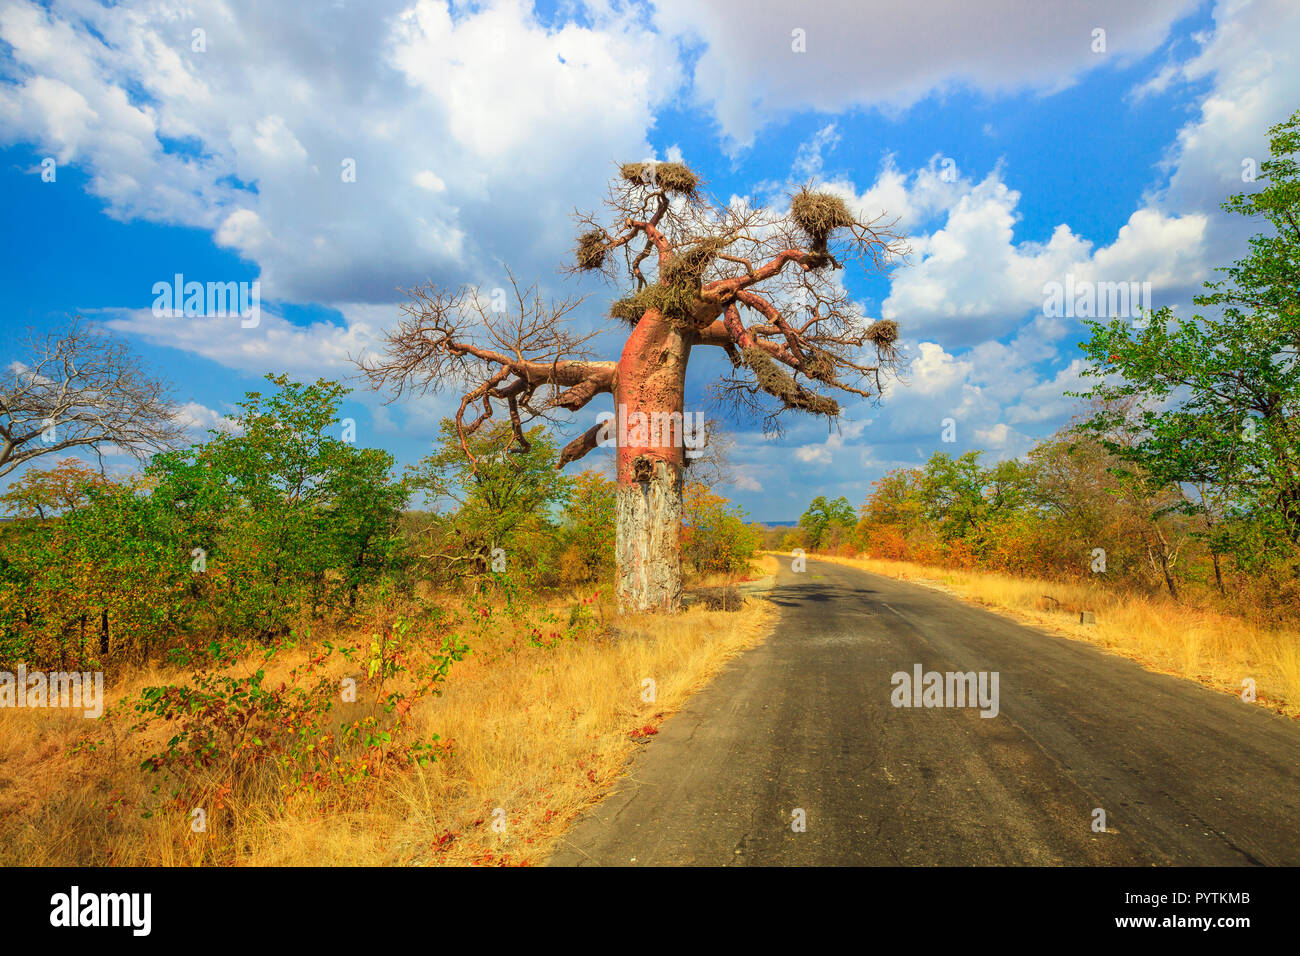 Safari Safari dans la réserve naturelle de Musina, une des plus importantes collections de baobabs en Afrique du Sud. Paysage pittoresque de baobab en jeu du Limpopo et réserves naturelles. Banque D'Images